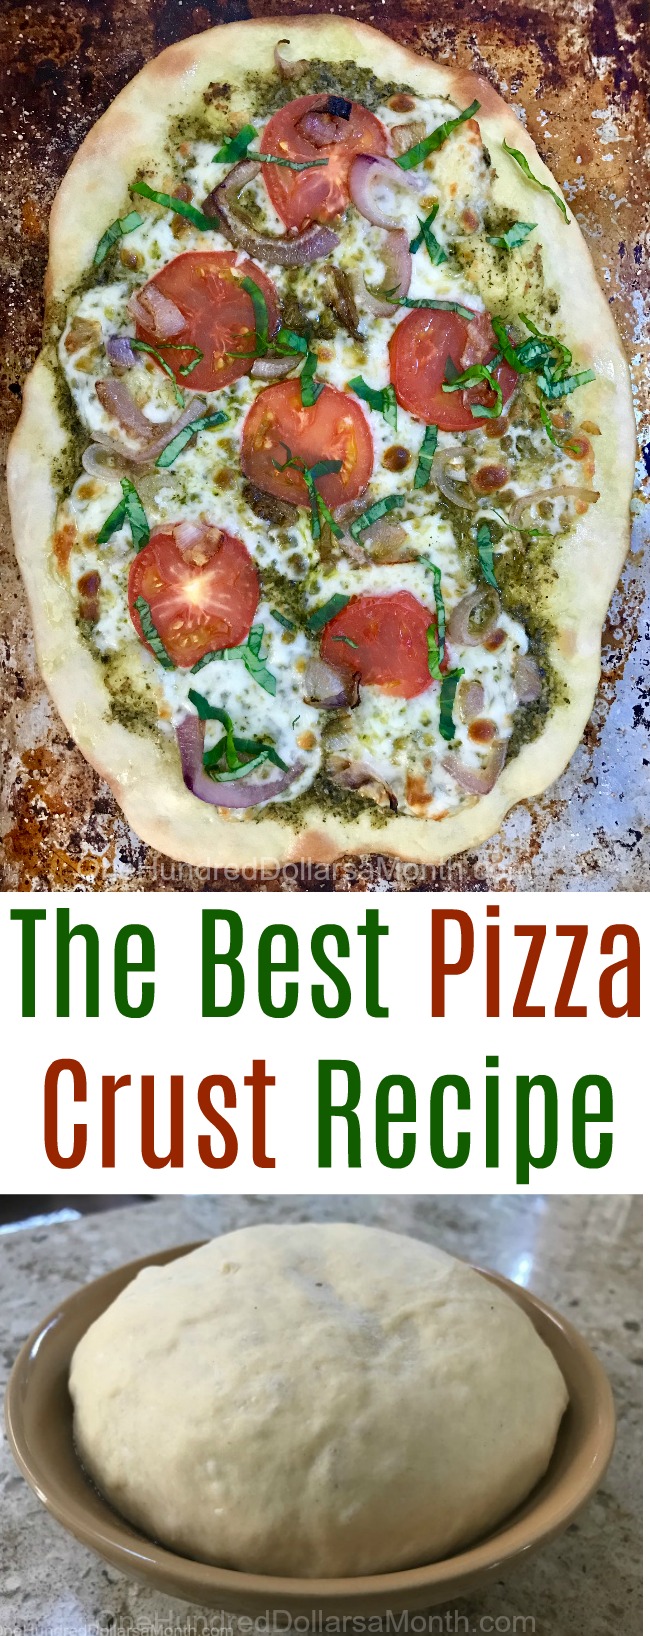 The Best Pizza Crust Recipe